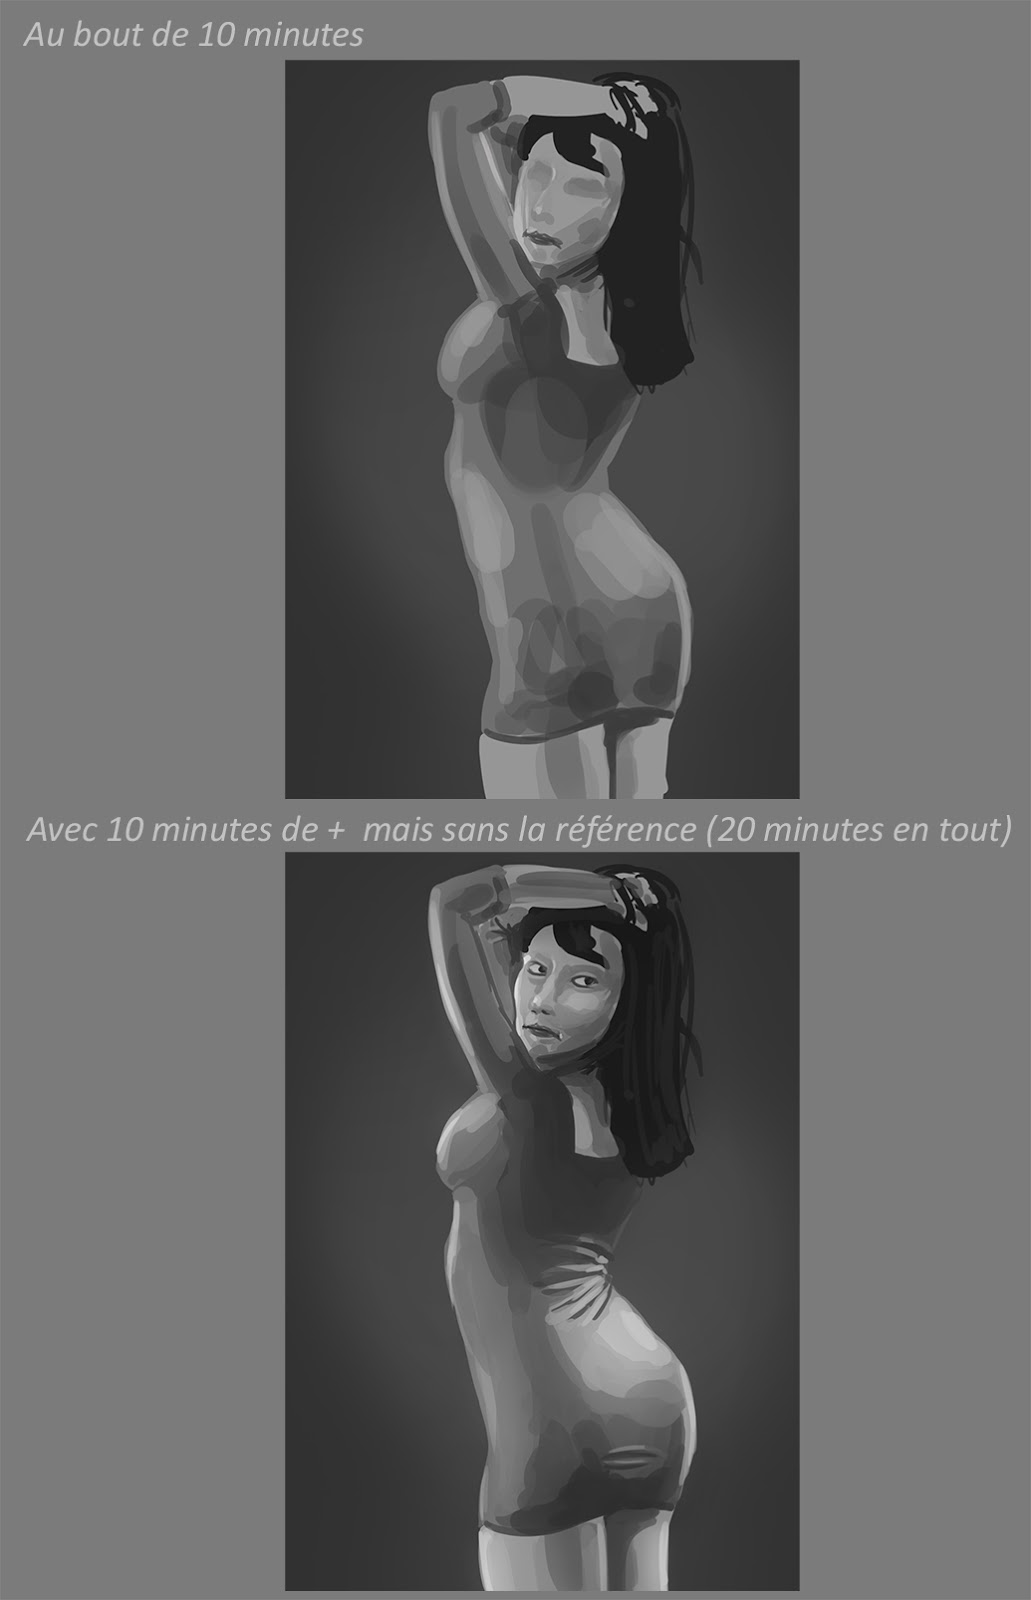 XaB au travail ! [nudity inside] - Page 8 J08-05-Gromy-Tipeee09-Studies